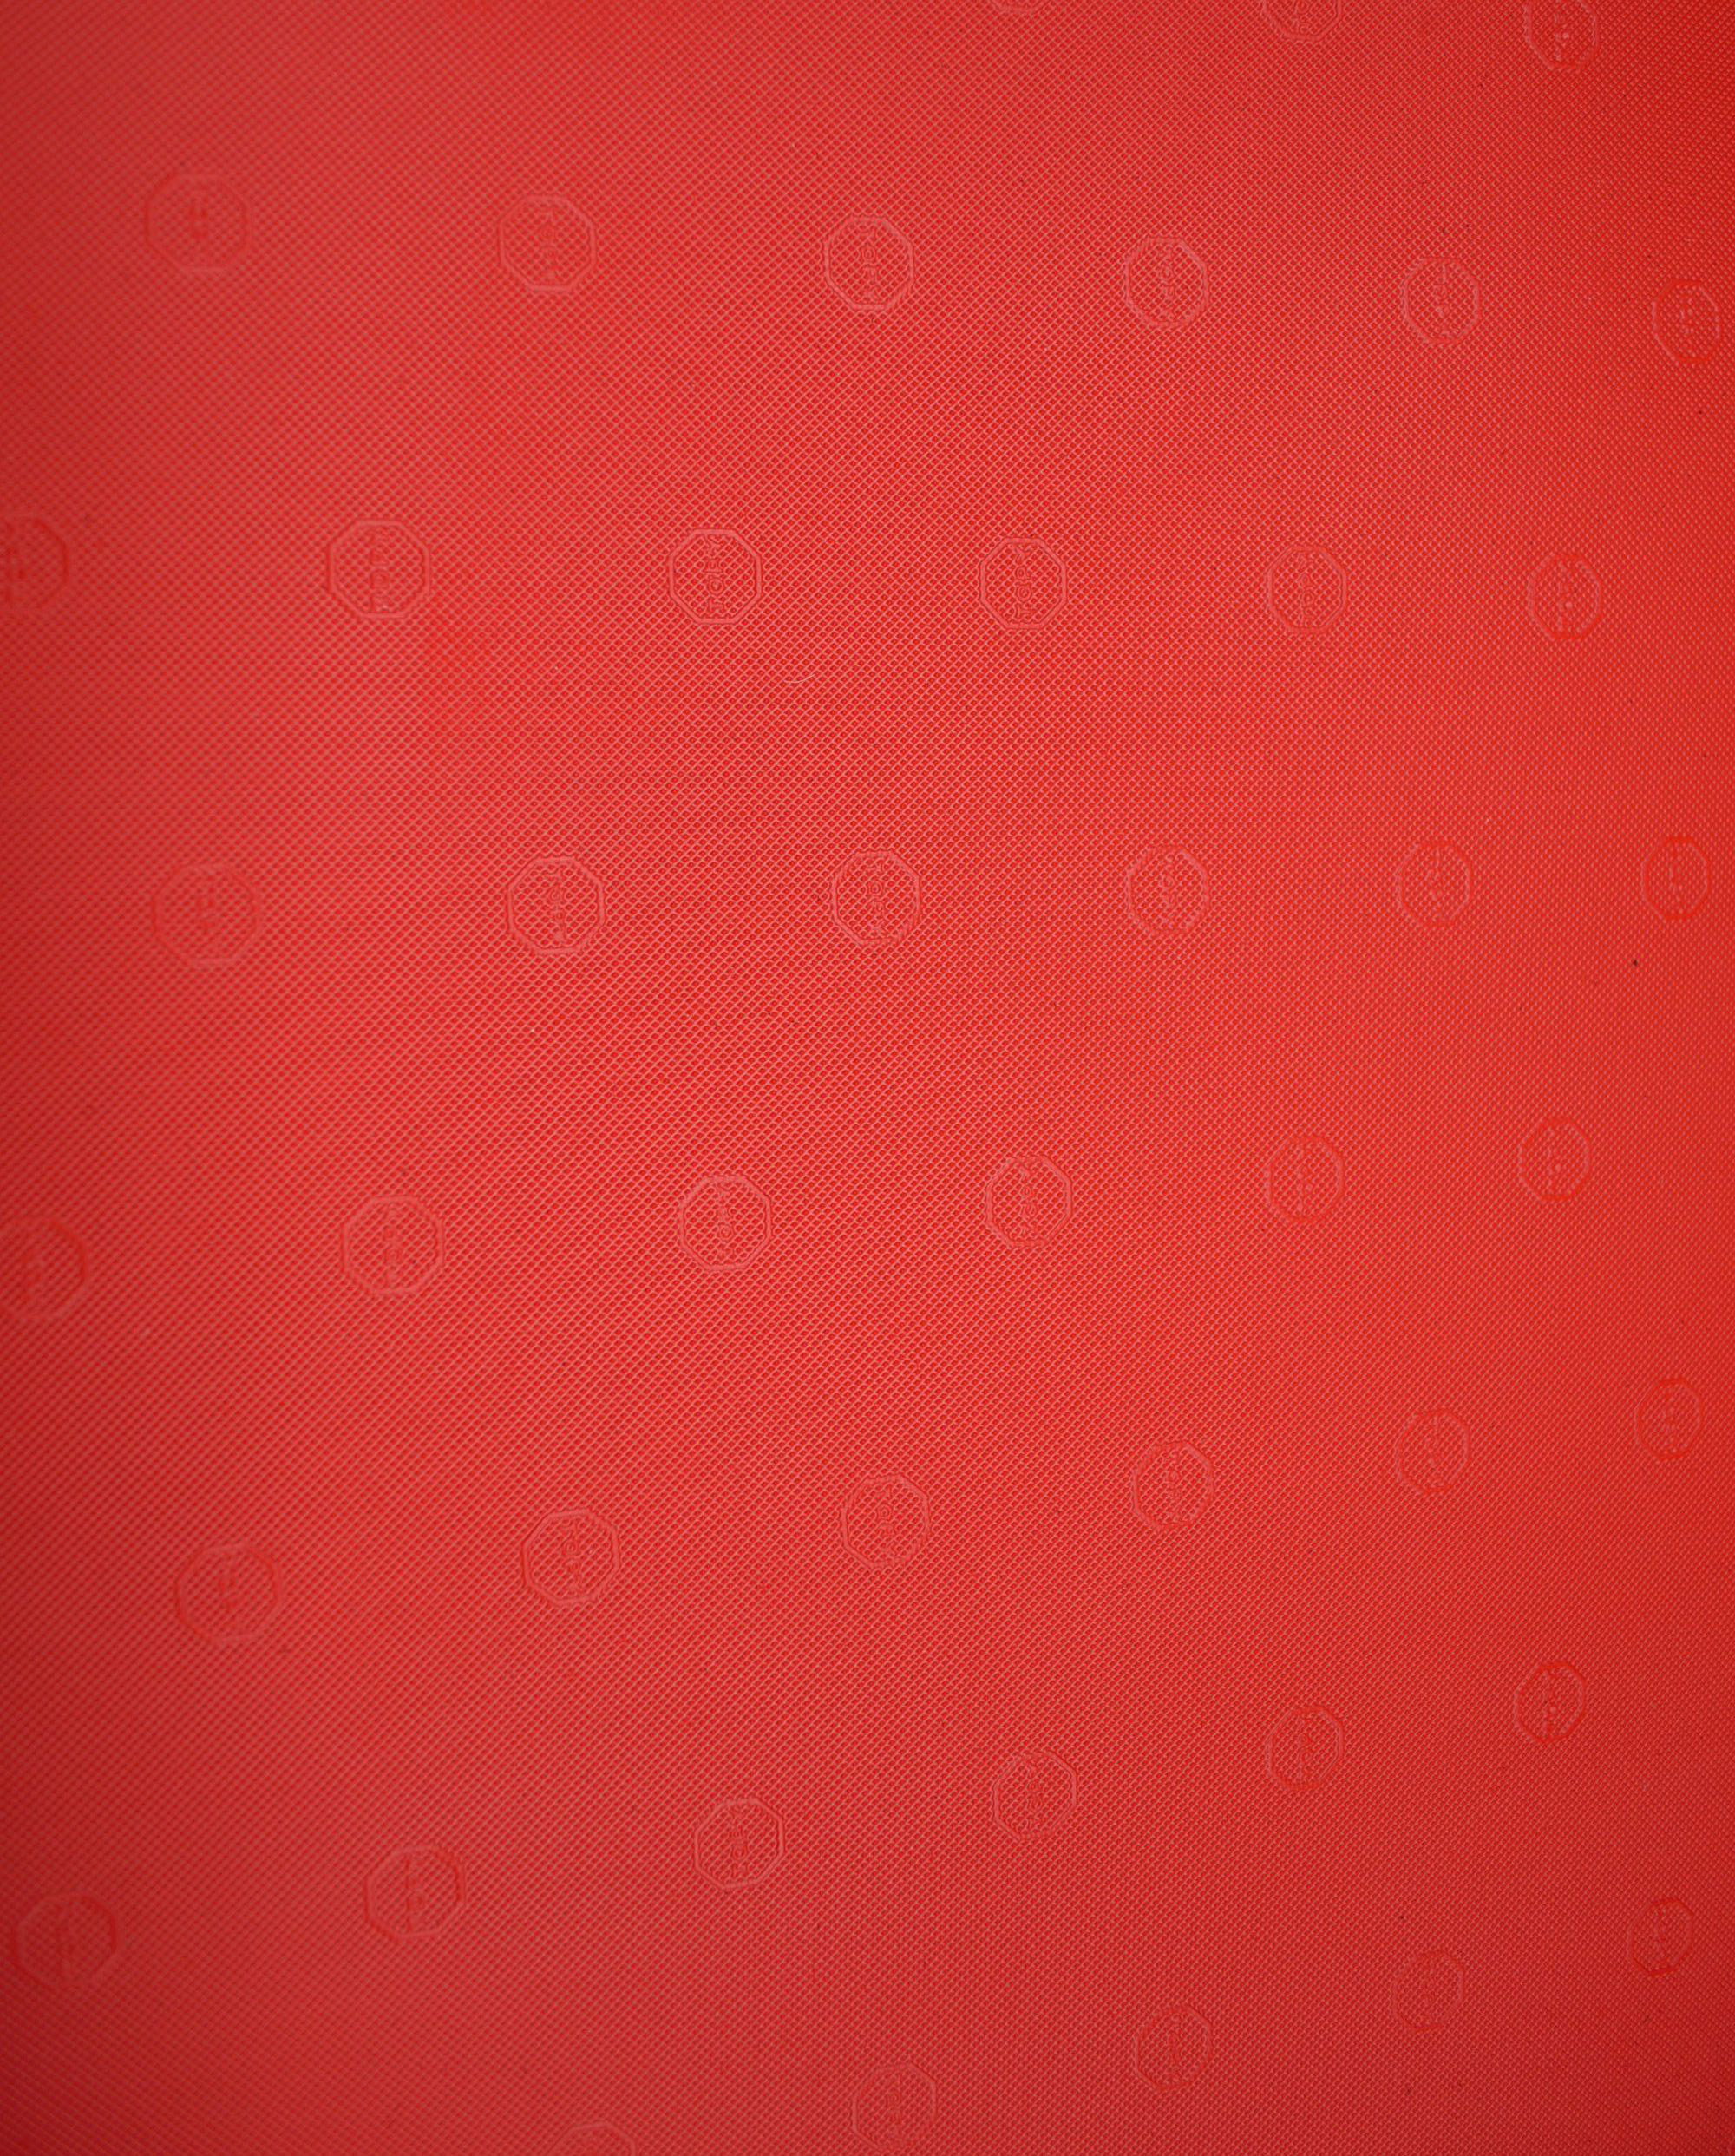 Topy 1,8 mm plotna na podrážky červená, guma, podrážka, pryž